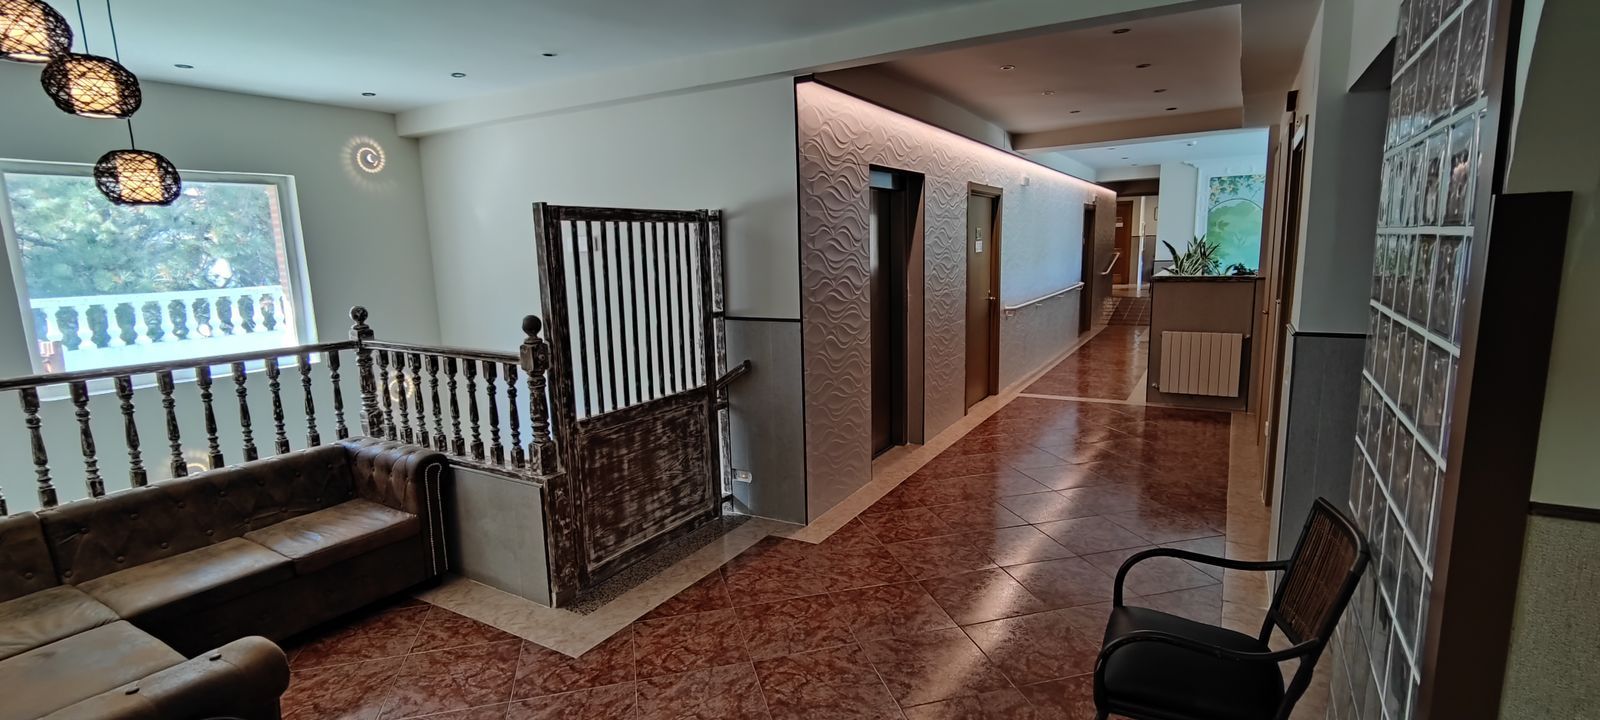 Foto 15 de Residencias geriátricas en Manzanares el Real | Ponderosa Real Hotel Residencia para Mayores